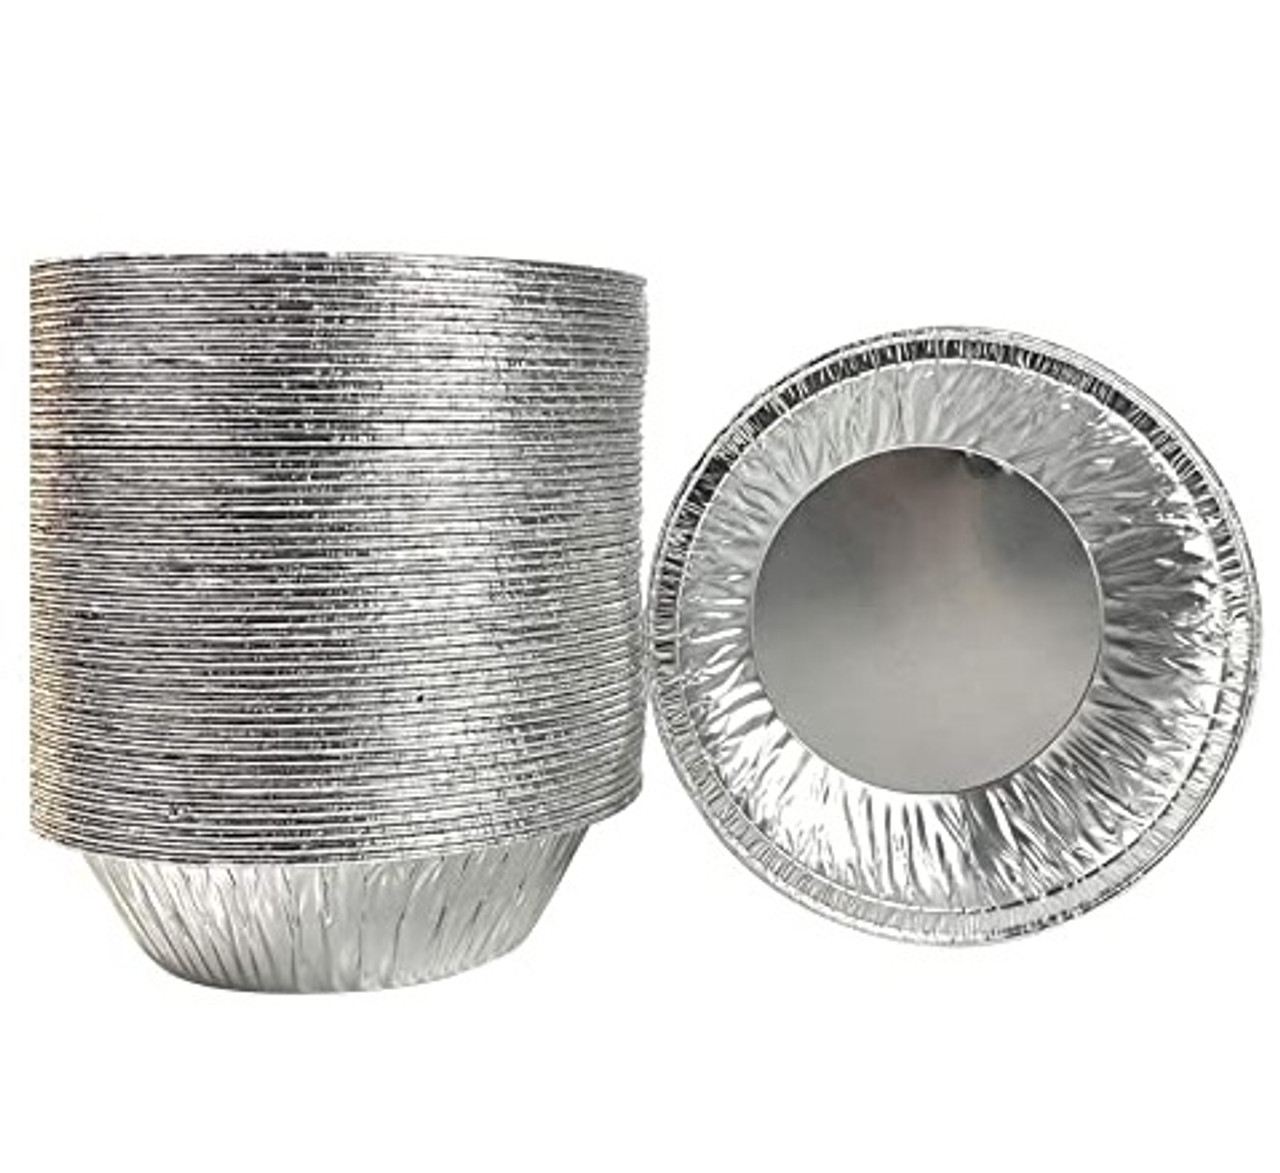 Aluminum Molds Disposable Baking - 10 Pcs Aluminum Baking Moulds